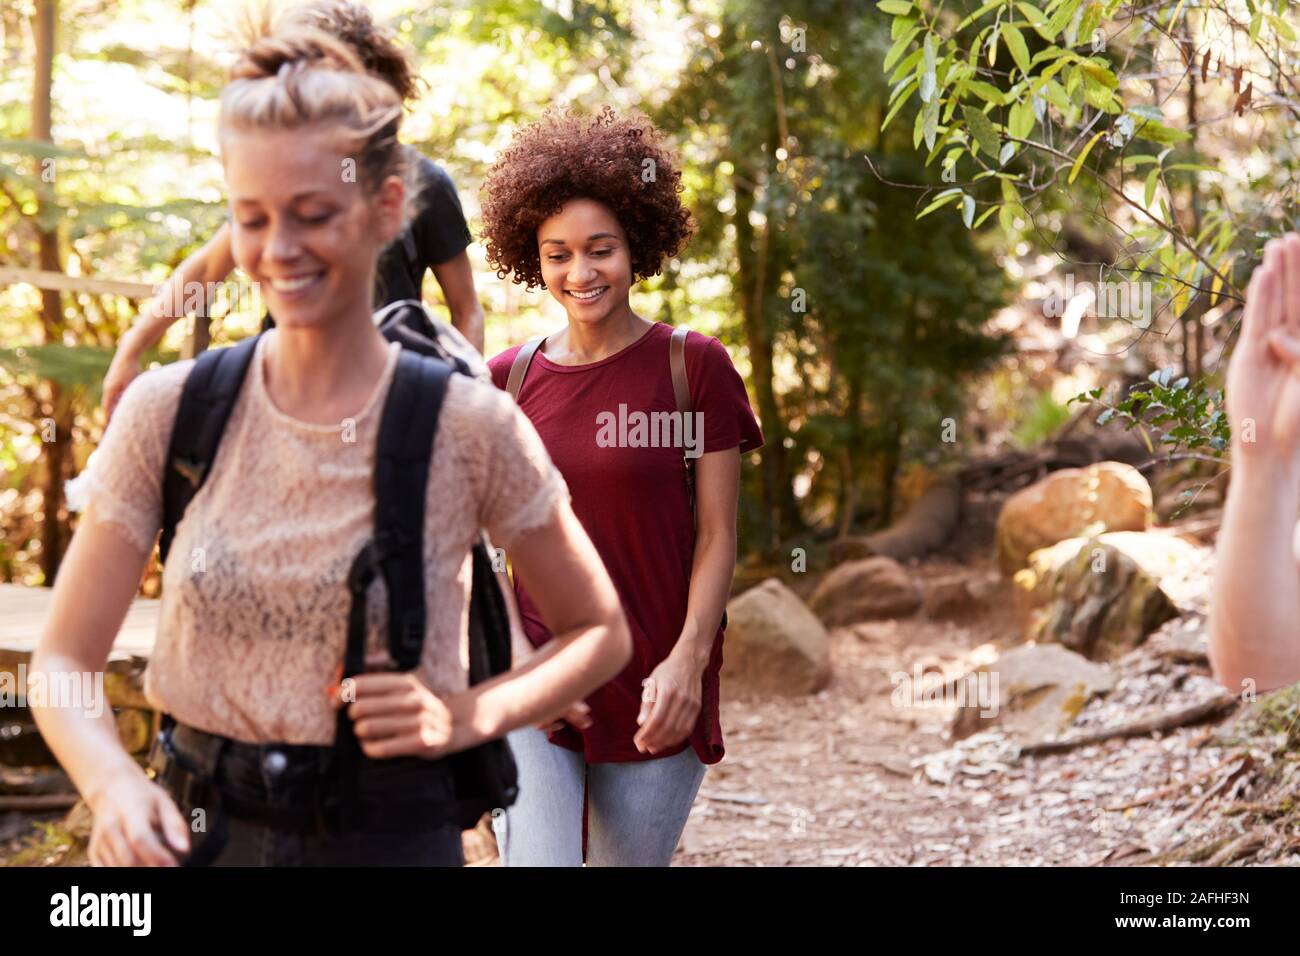 La millenaria fidanzate camminare insieme durante una passeggiata in un bosco vicino fino Foto Stock